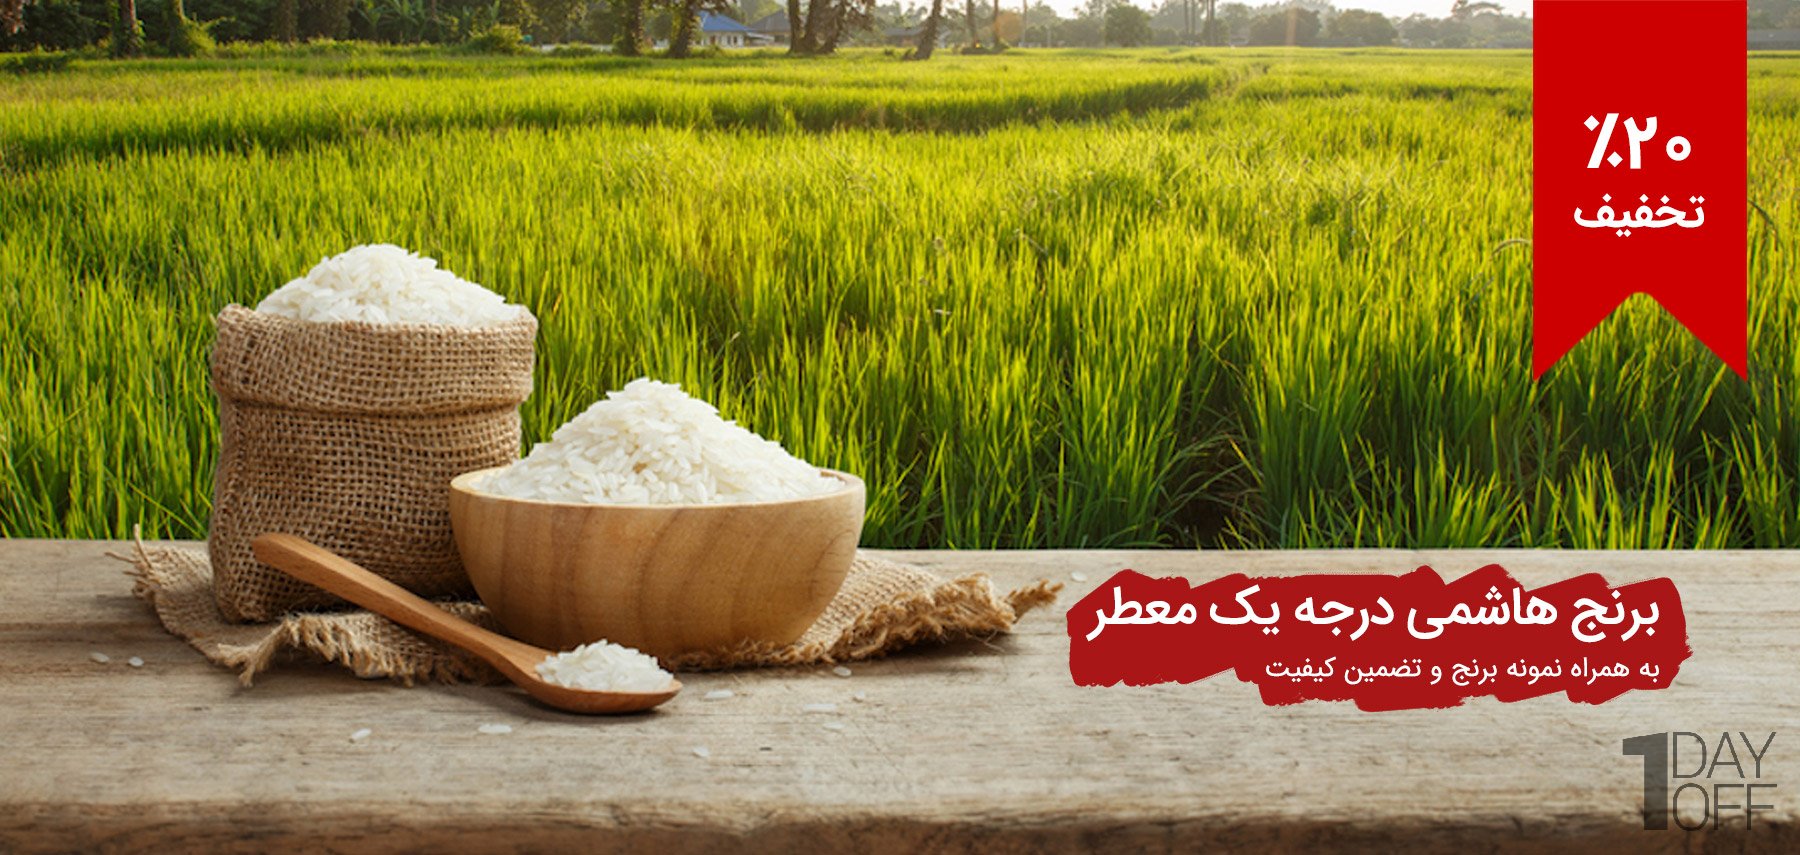 فروش ویژه برنج هاشمی درجه یک مخصوص معطر گیلان عرضه اختصاصی در وان دی آف - با تضمین کیفیت و بسته نمونه 100 گرمی